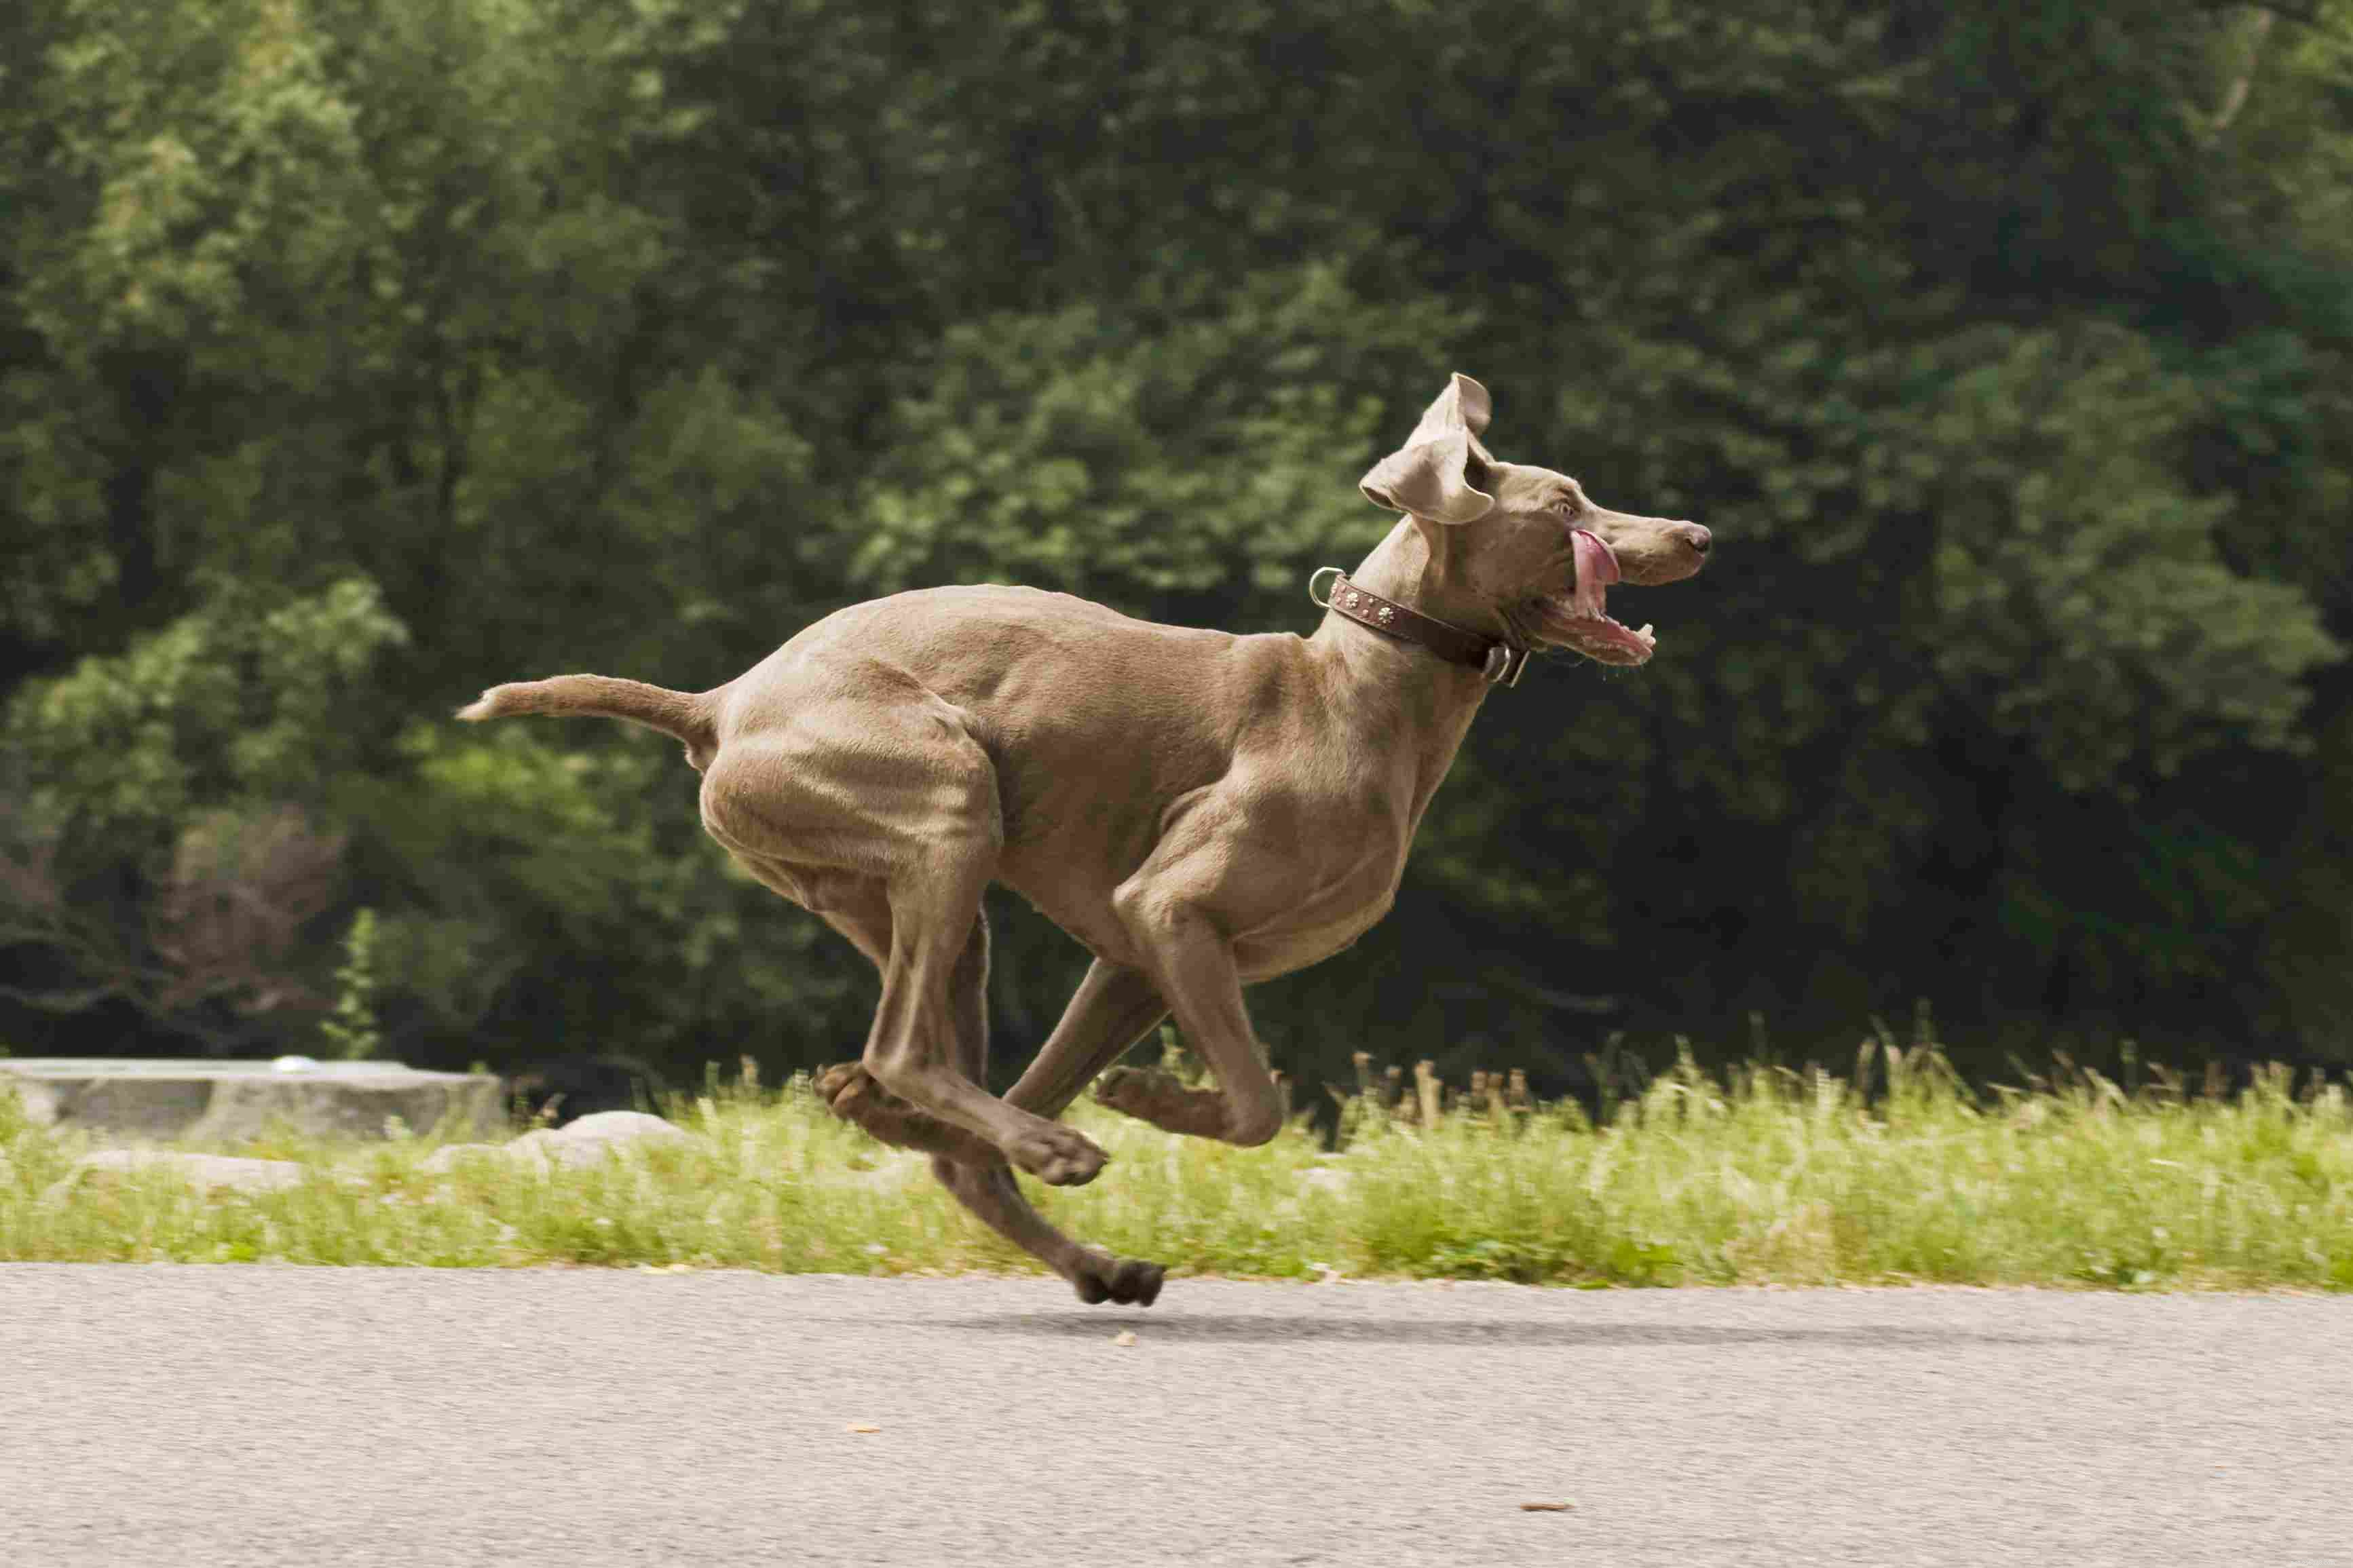 10 bästa energiska hundraser för aktiva människor